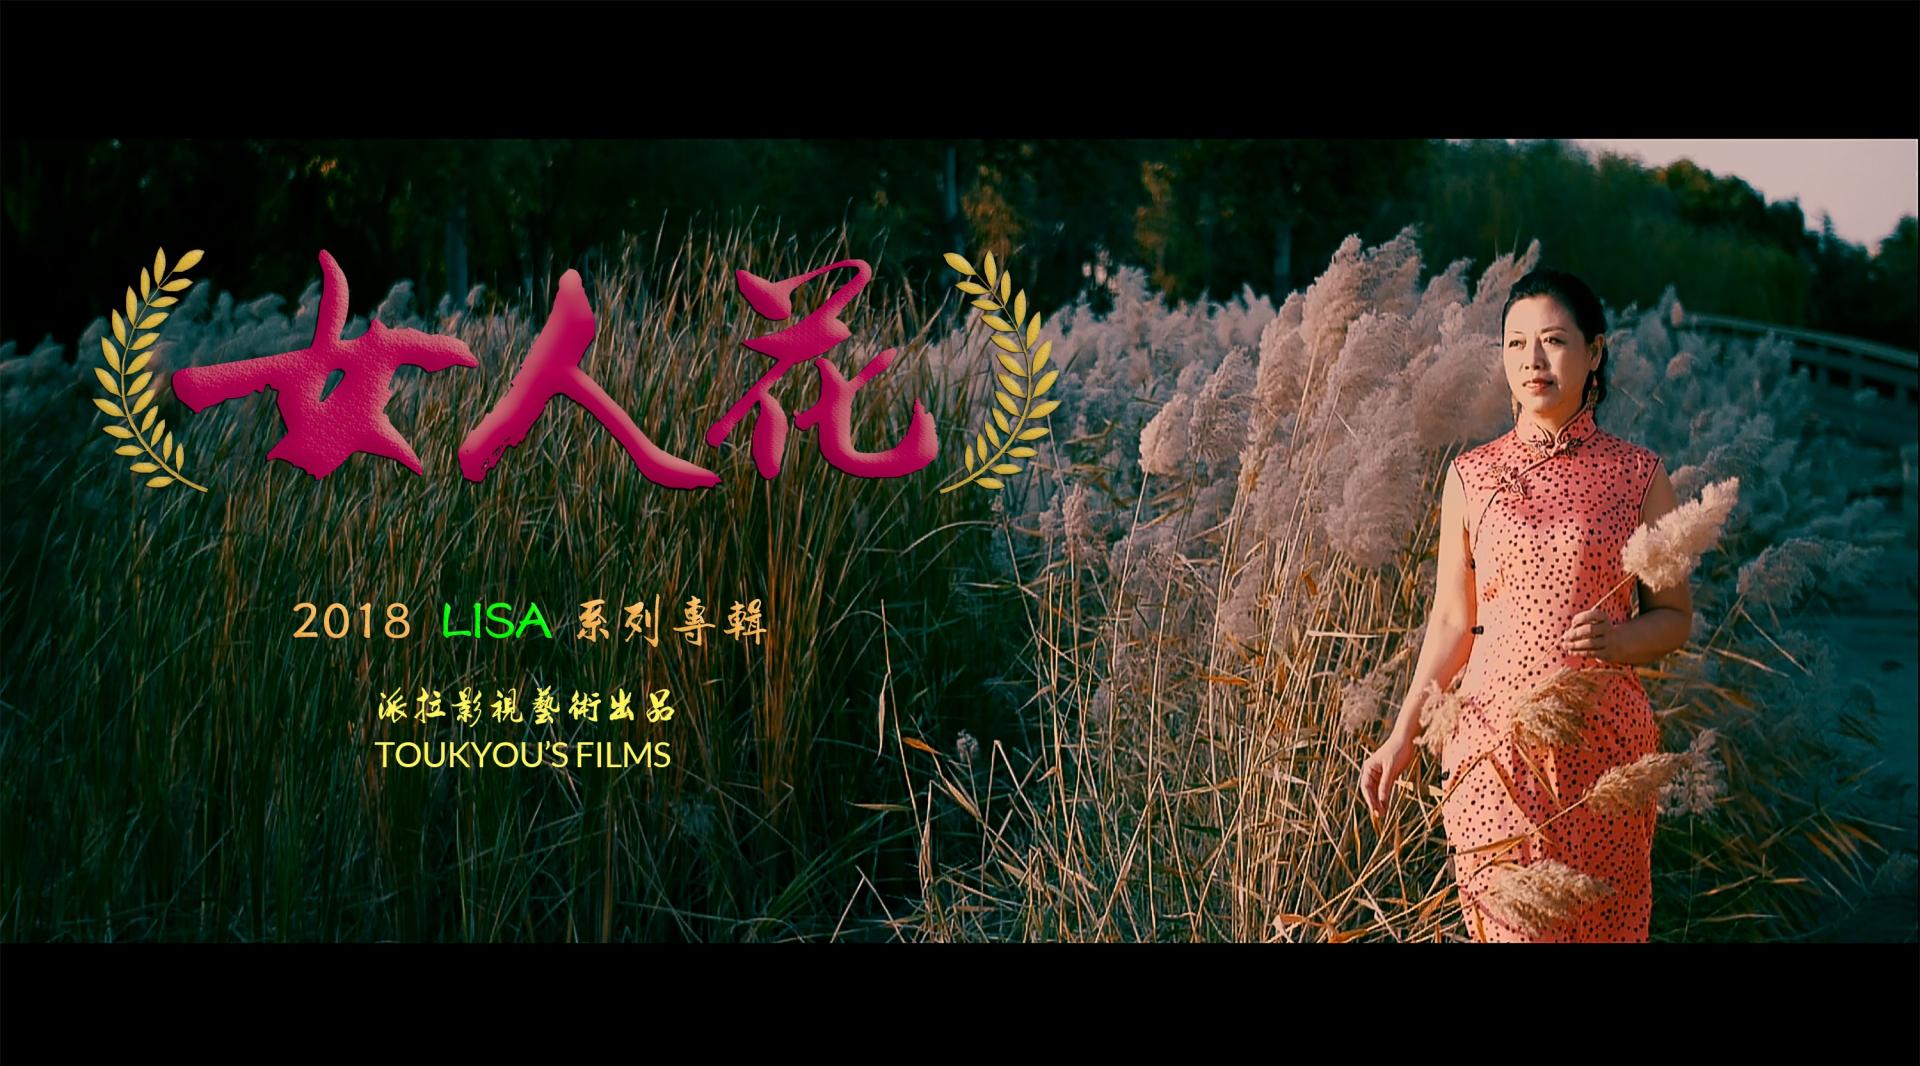 【女人花】TOUKYOU'S FILMS